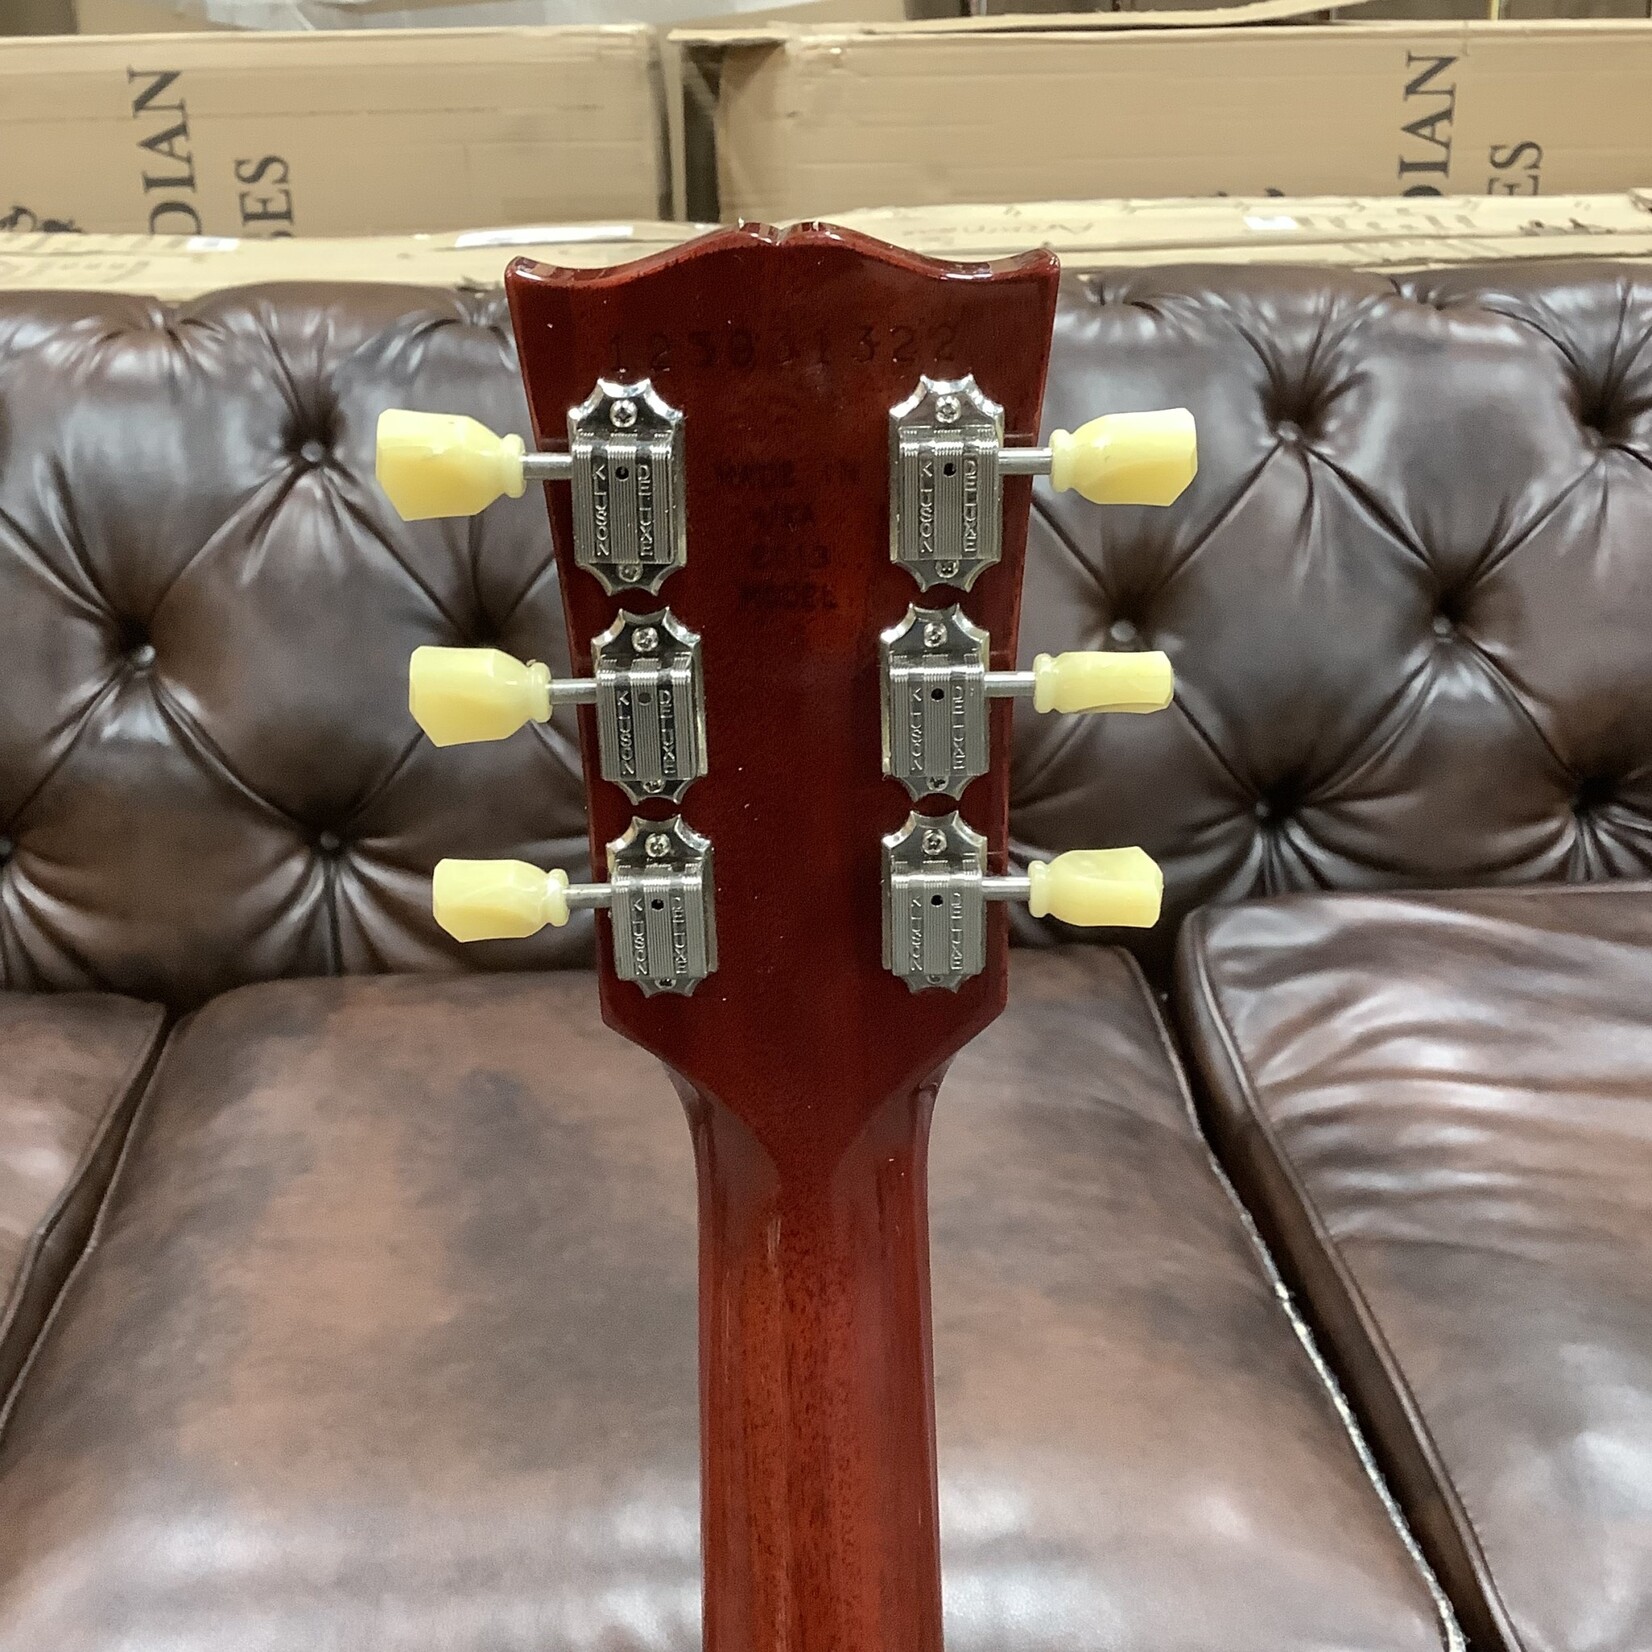 Gibson 2013 Gibson Les Paul Traditional Sunburst Left Handed